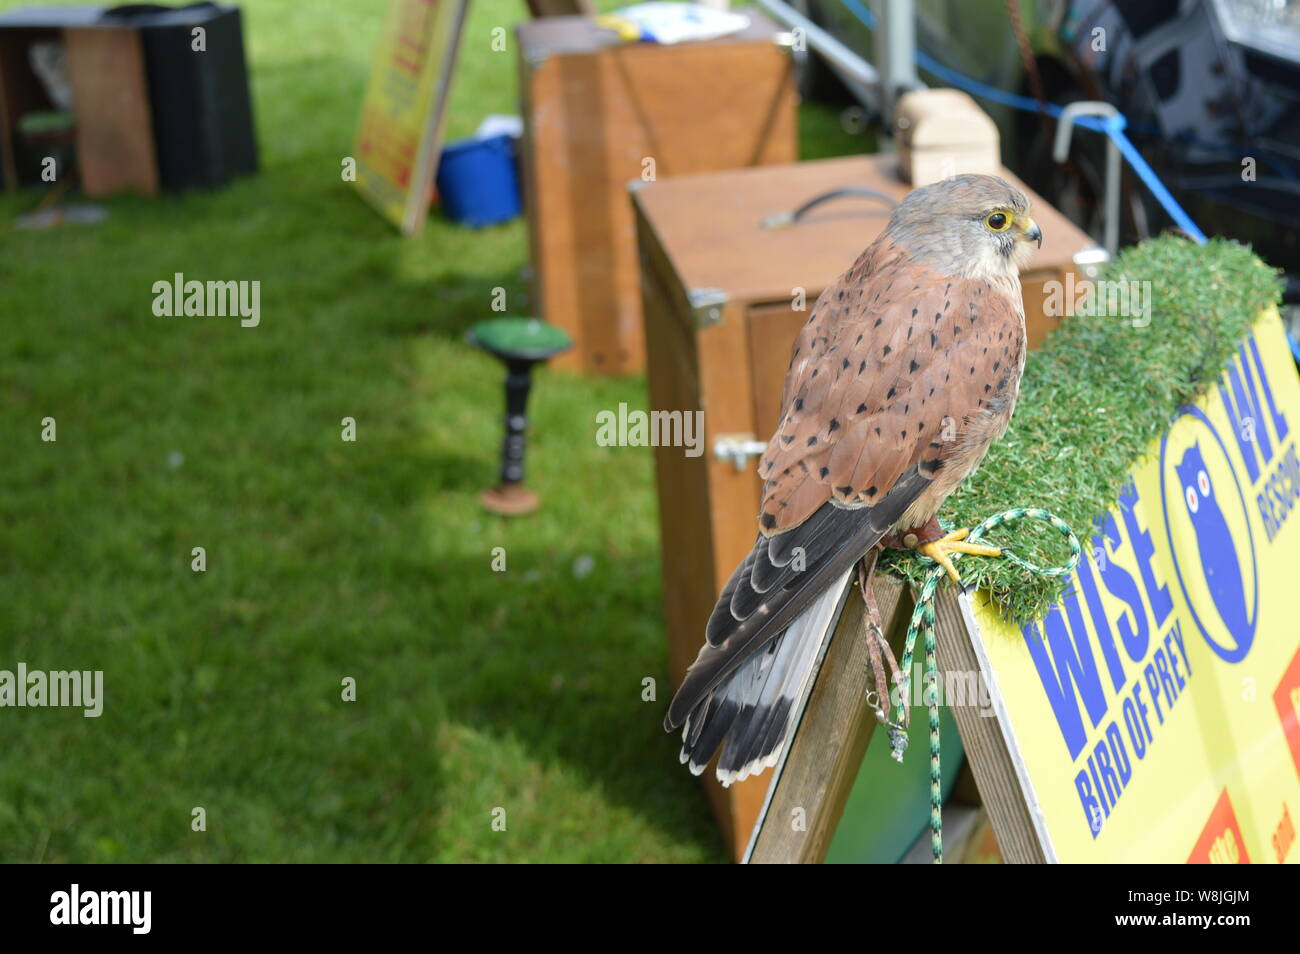 Wild birds show owls Eagle UK England Stock Photo